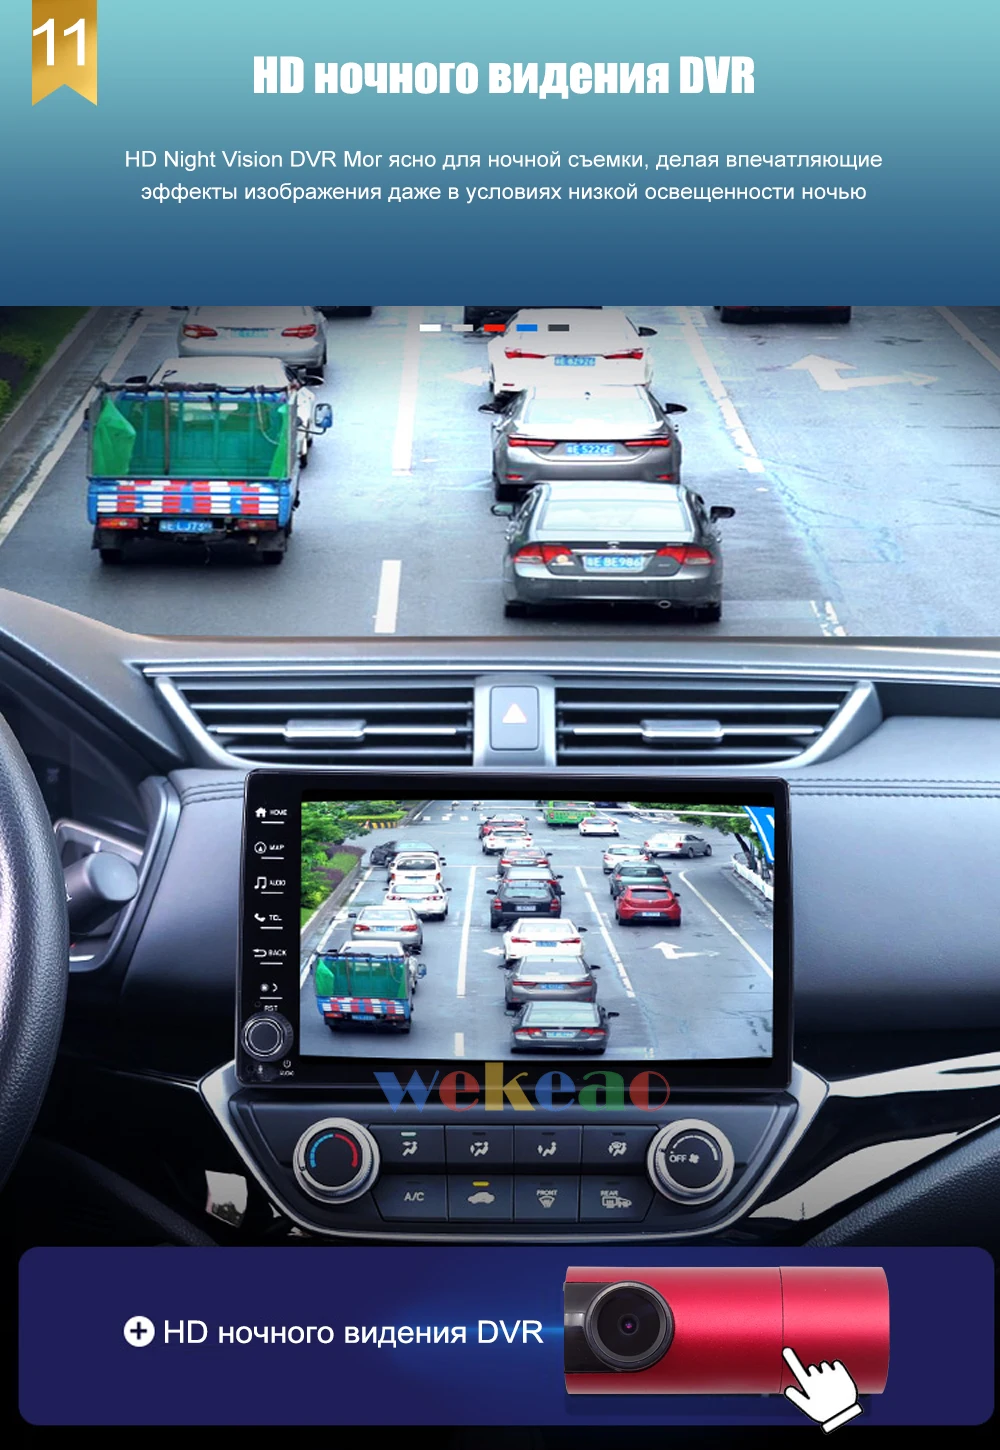 Wekeao вертикальный экран Tesla style 12,1 ''Android 7,1 Автомобильный мультимедийный Dvd навигатор Автомагнитола для Mitsubishi Pajero V93 2006